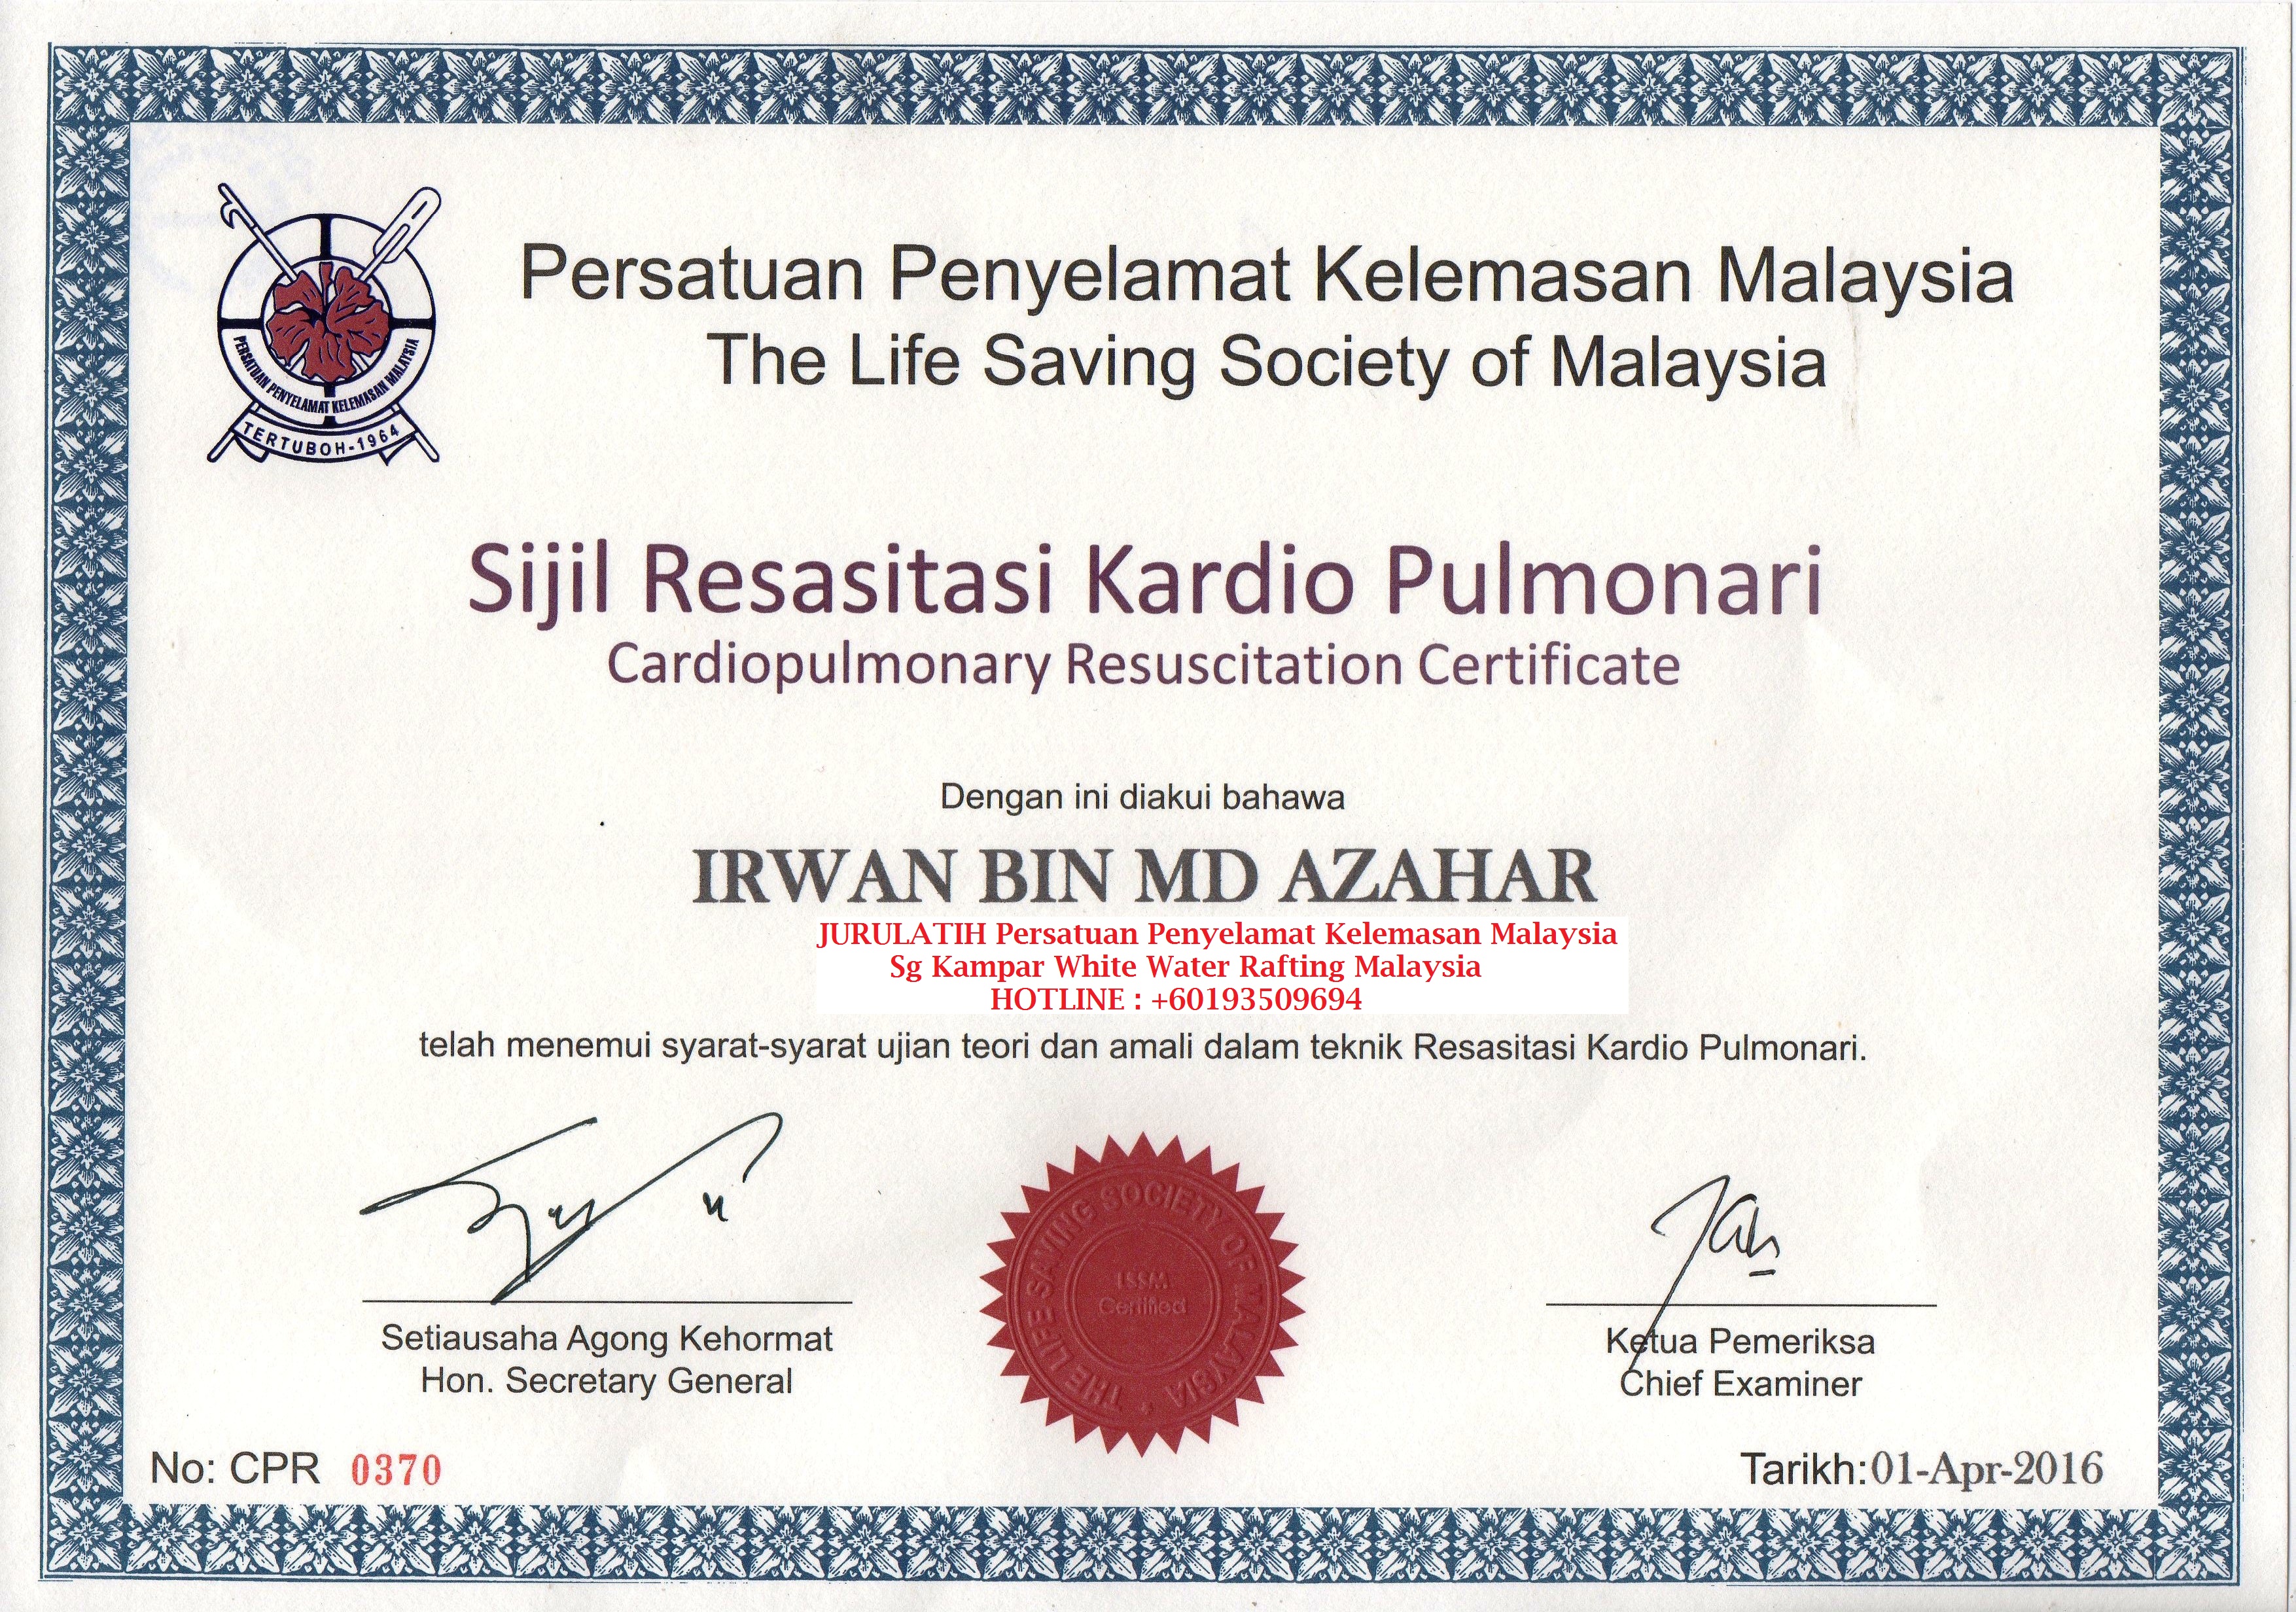 CPR certified irwan md azahar